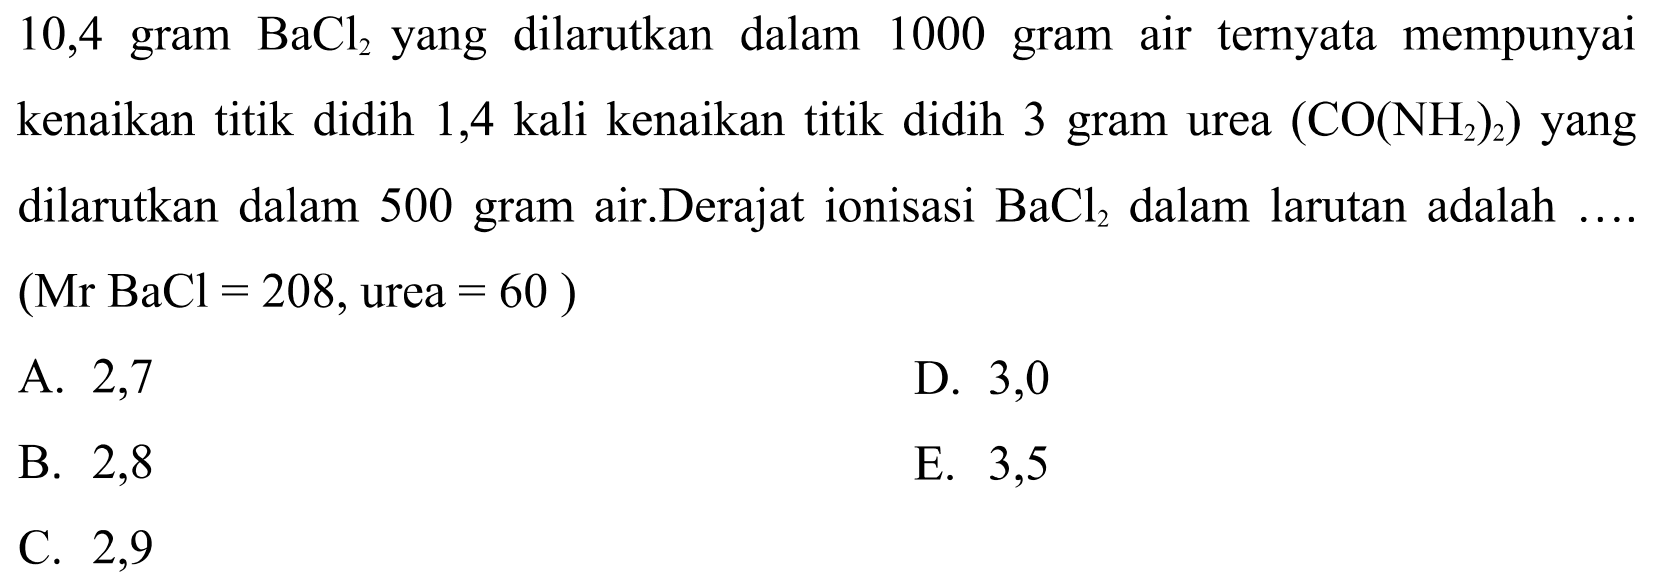 10,4 gram  BaCl2  yang dilarutkan dalam 1000 gram air ternyata mempunyai kenaikan titik didih 1,4 kali kenaikan titik didih 3 gram urea  (CO(NH2)2)  yang dilarutkan dalam 500 gram air. Derajat ionisasi  BaCl2  dalam larutan adalah ....  (Mr BaCl=208, urea=60)